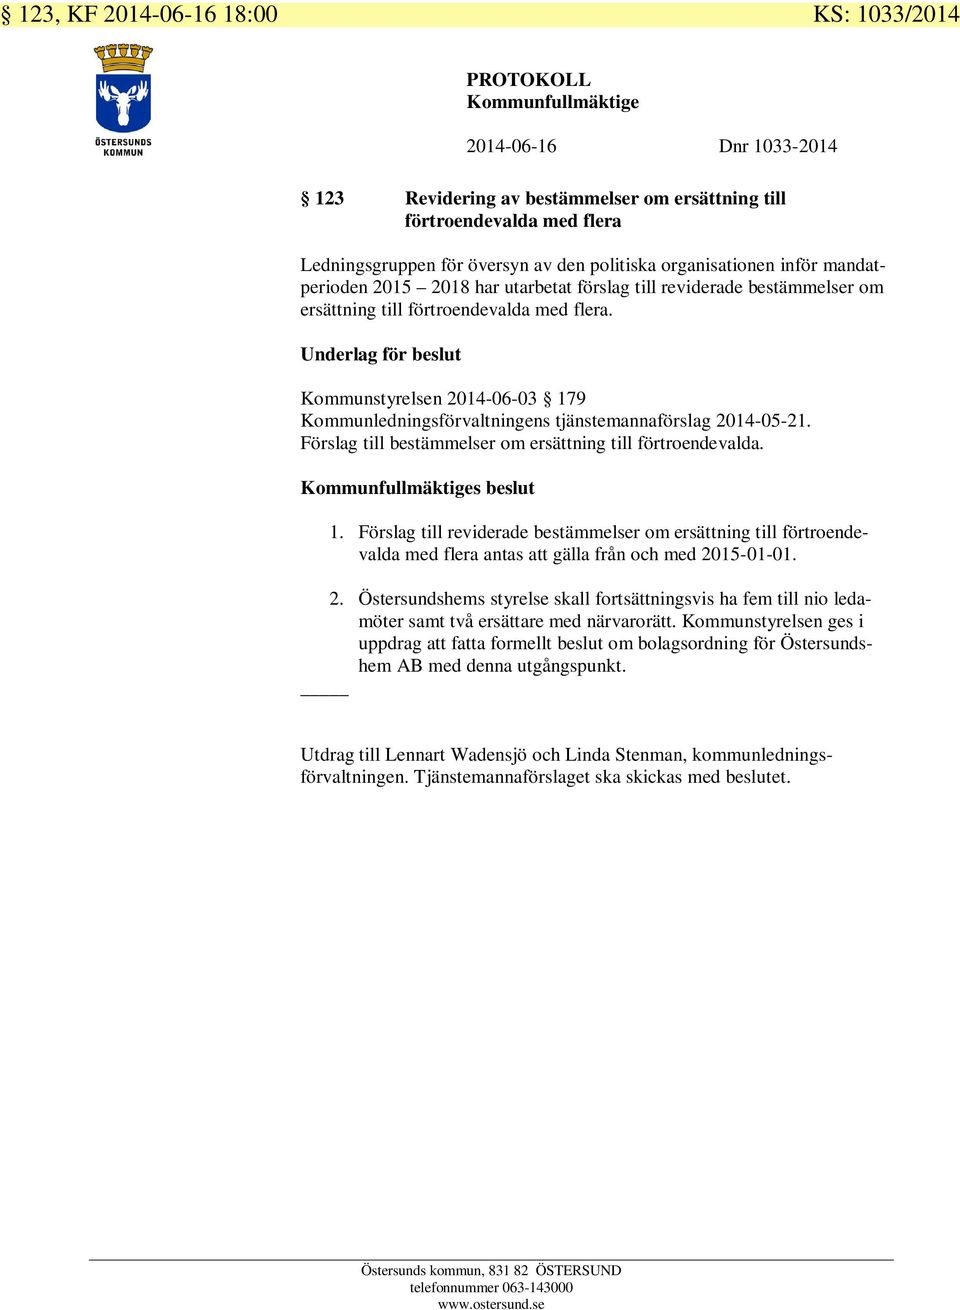 Underlag för beslut Kommunstyrelsen 2014-06-03 179 Kommunledningsförvaltningens tjänstemannaförslag 2014-05-21. Förslag till bestämmelser om ersättning till förtroendevalda. s beslut 1.